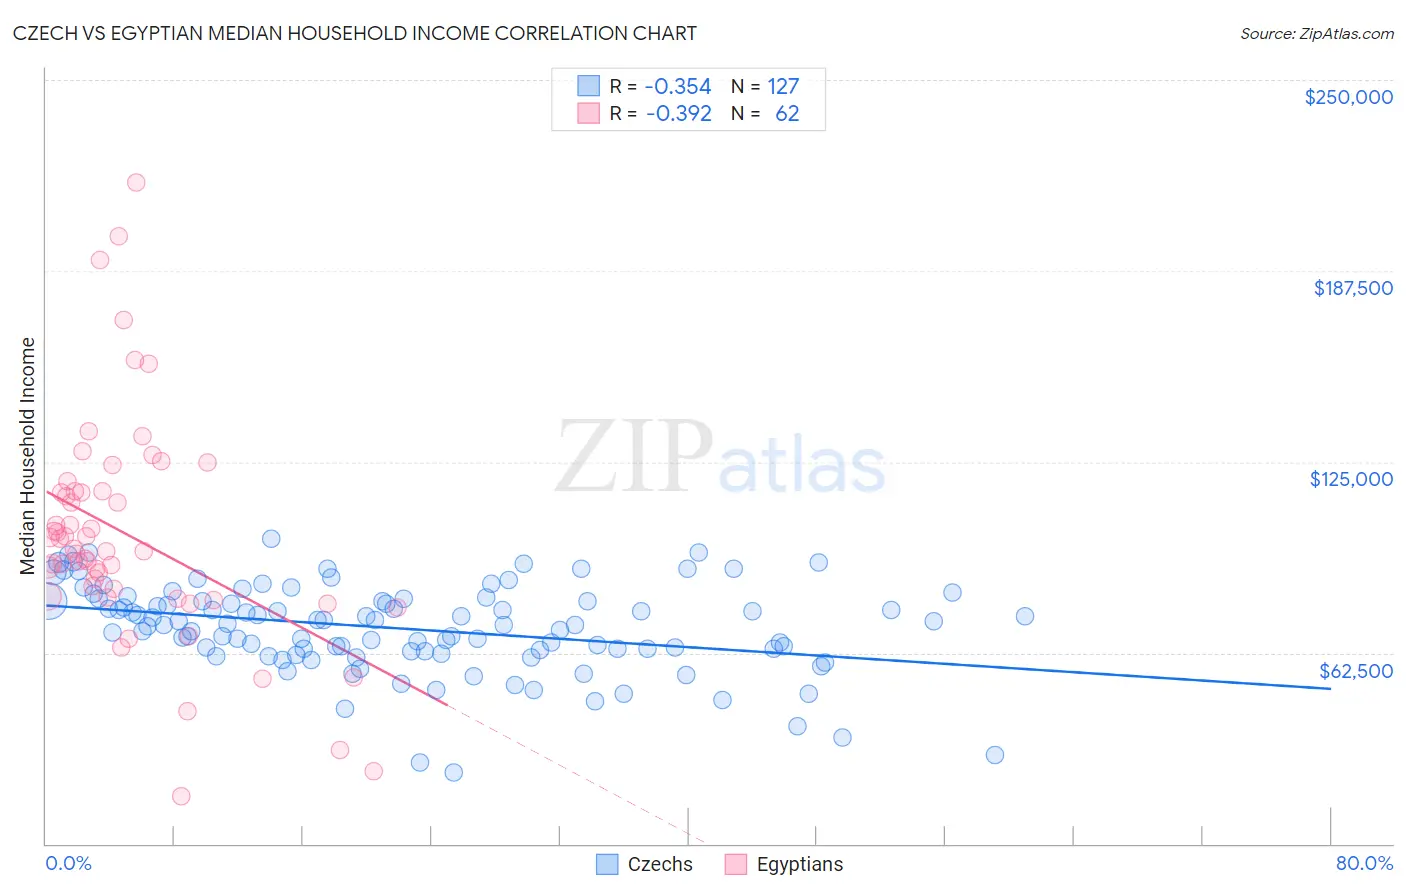 Czech vs Egyptian Median Household Income